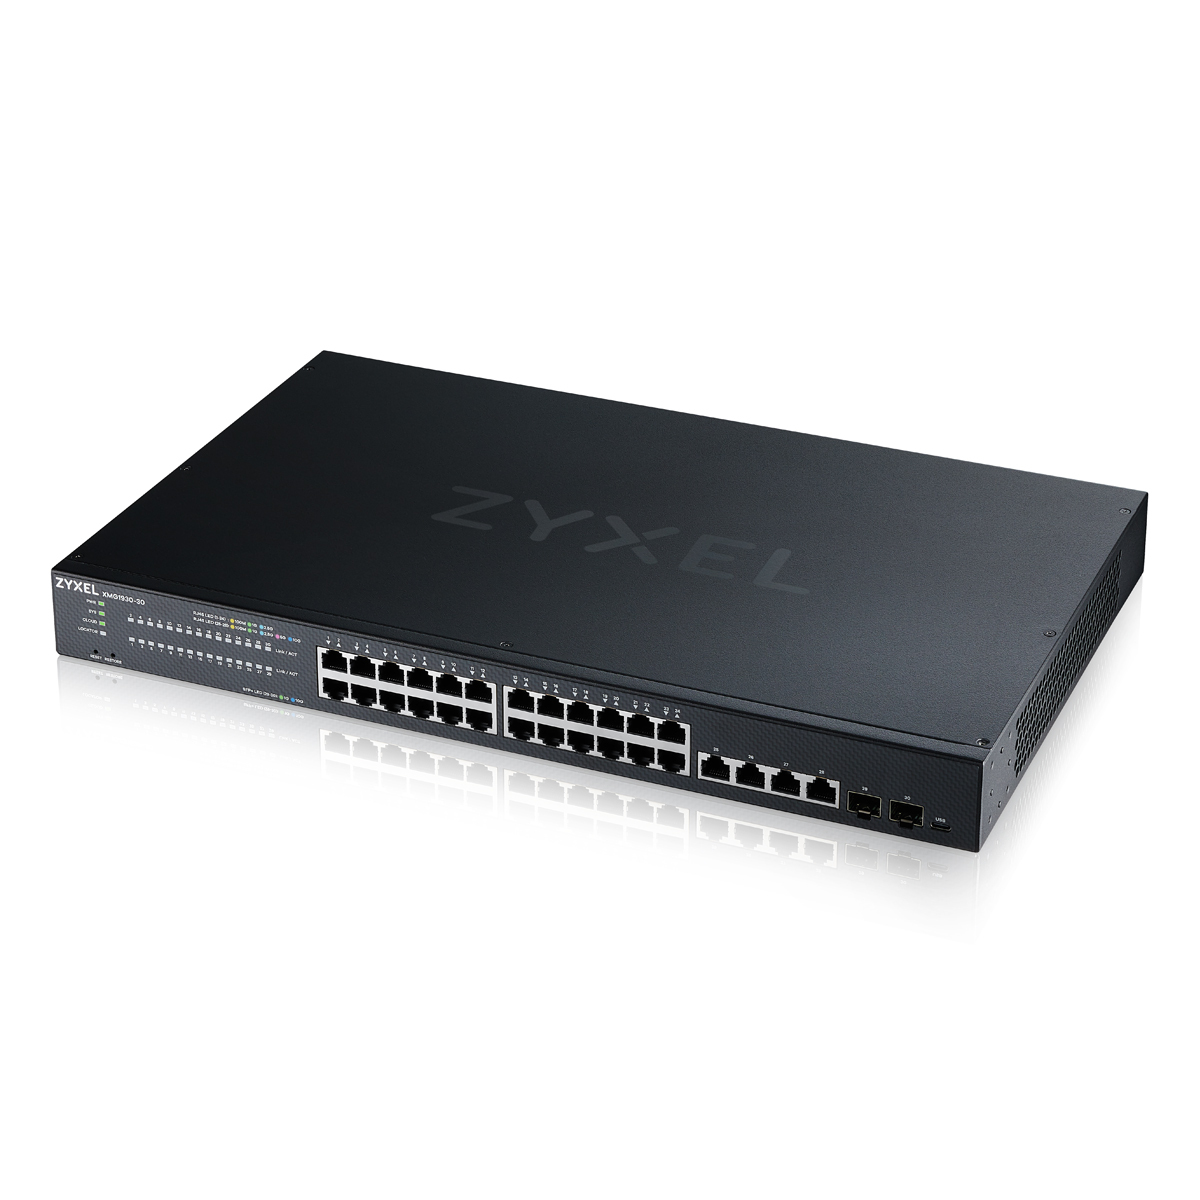 Zyxel XMG1930-30 Smart Managed Switch 24x 2.5G Ethernet, 4x 10G Ethernet, 2x 10G SFP+ von Zyxel